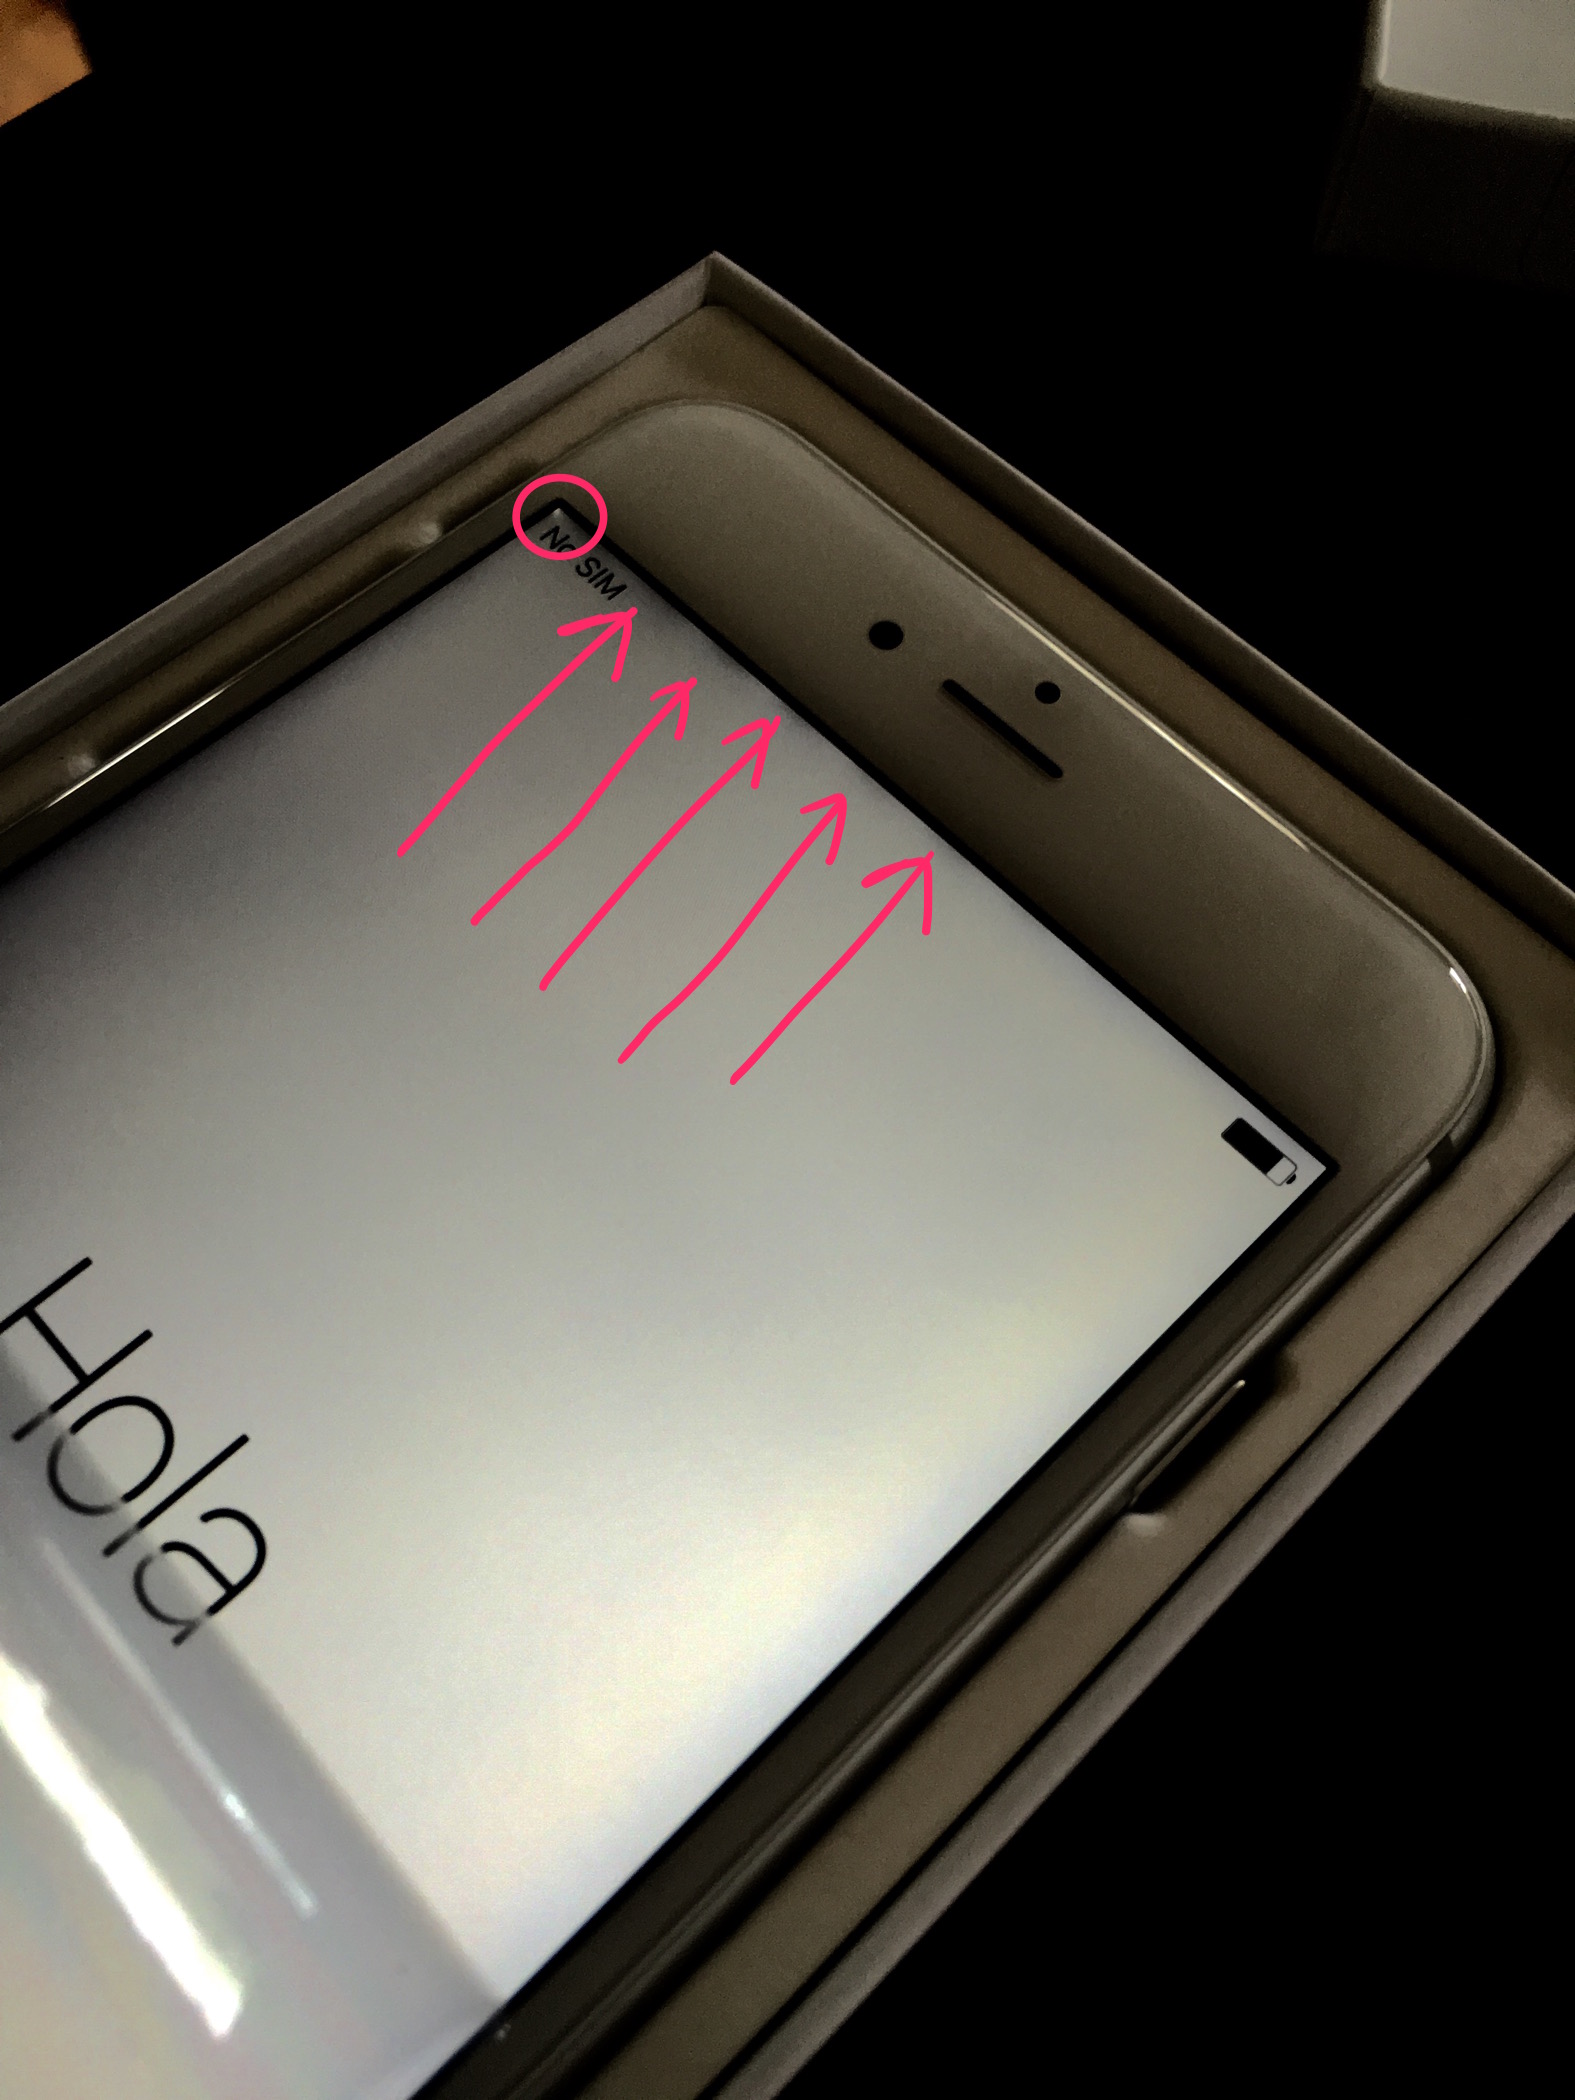 Problèmes d'écran avec saignement du rétroéclairage de l'iPhone 6S Plus 1